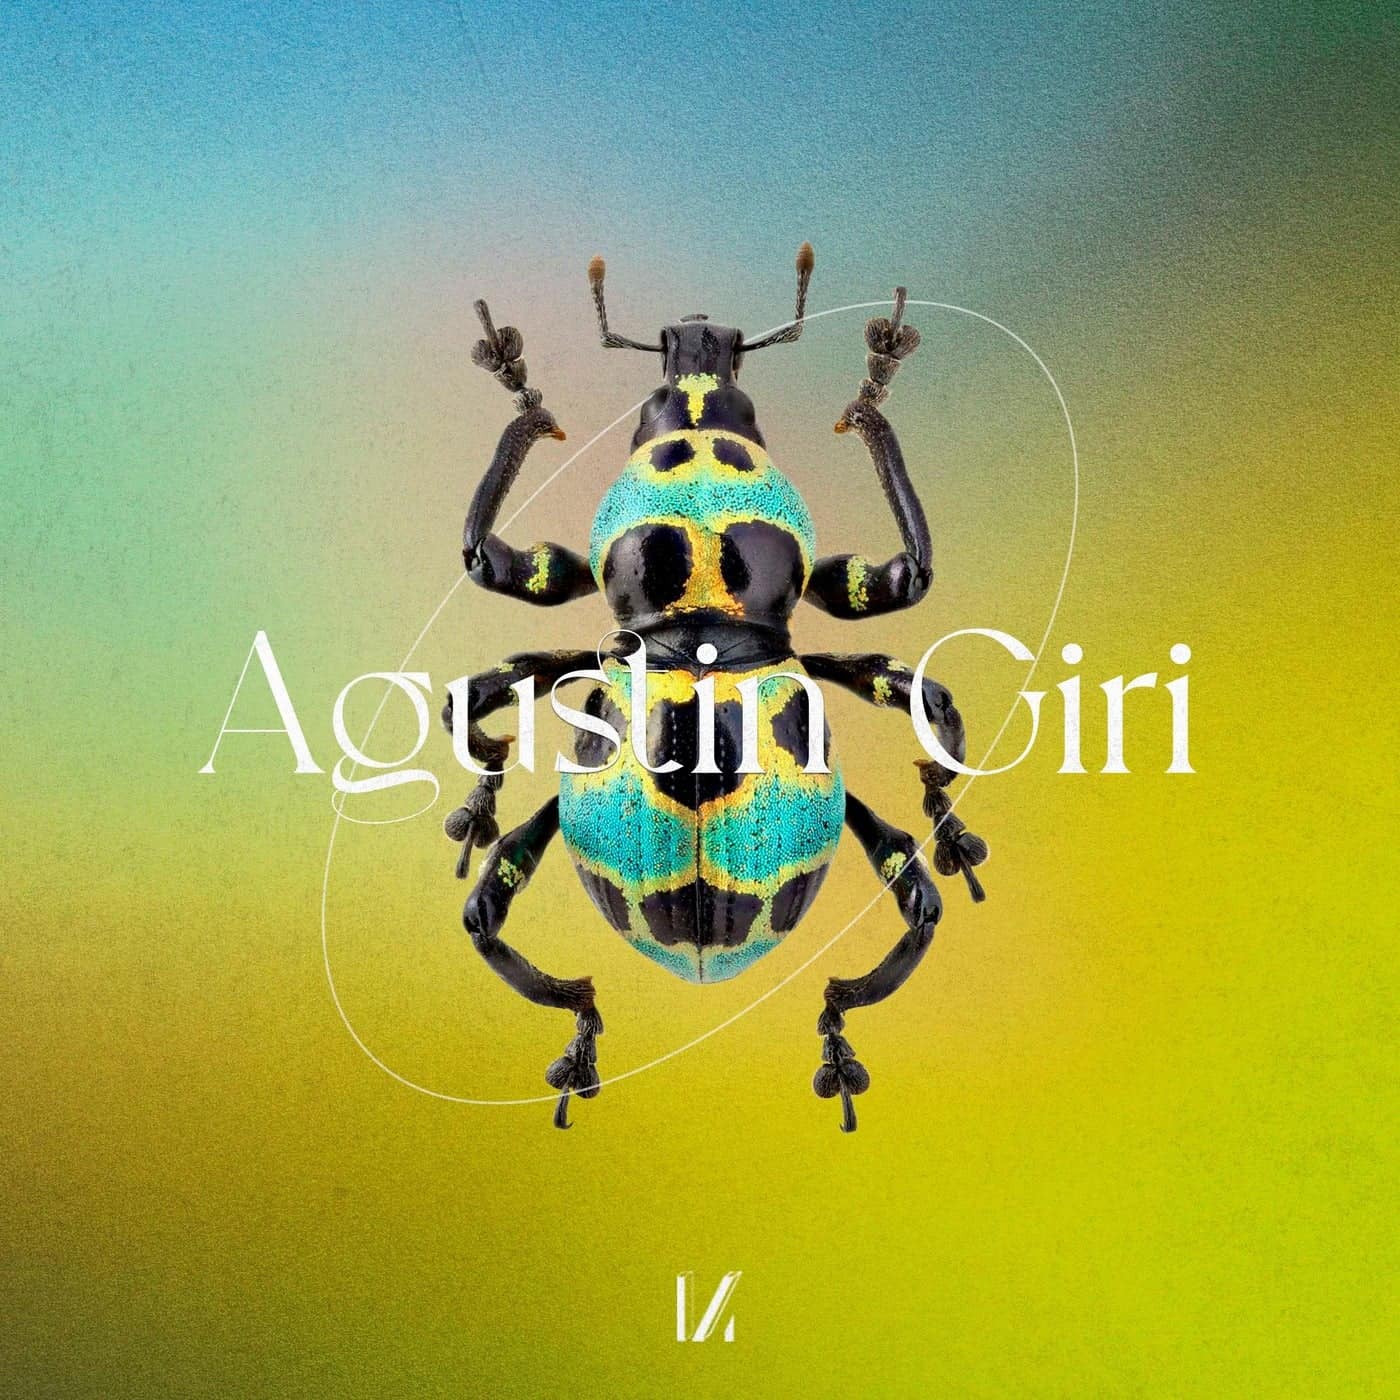 Download Agustin Giri - Provoke on Electrobuzz